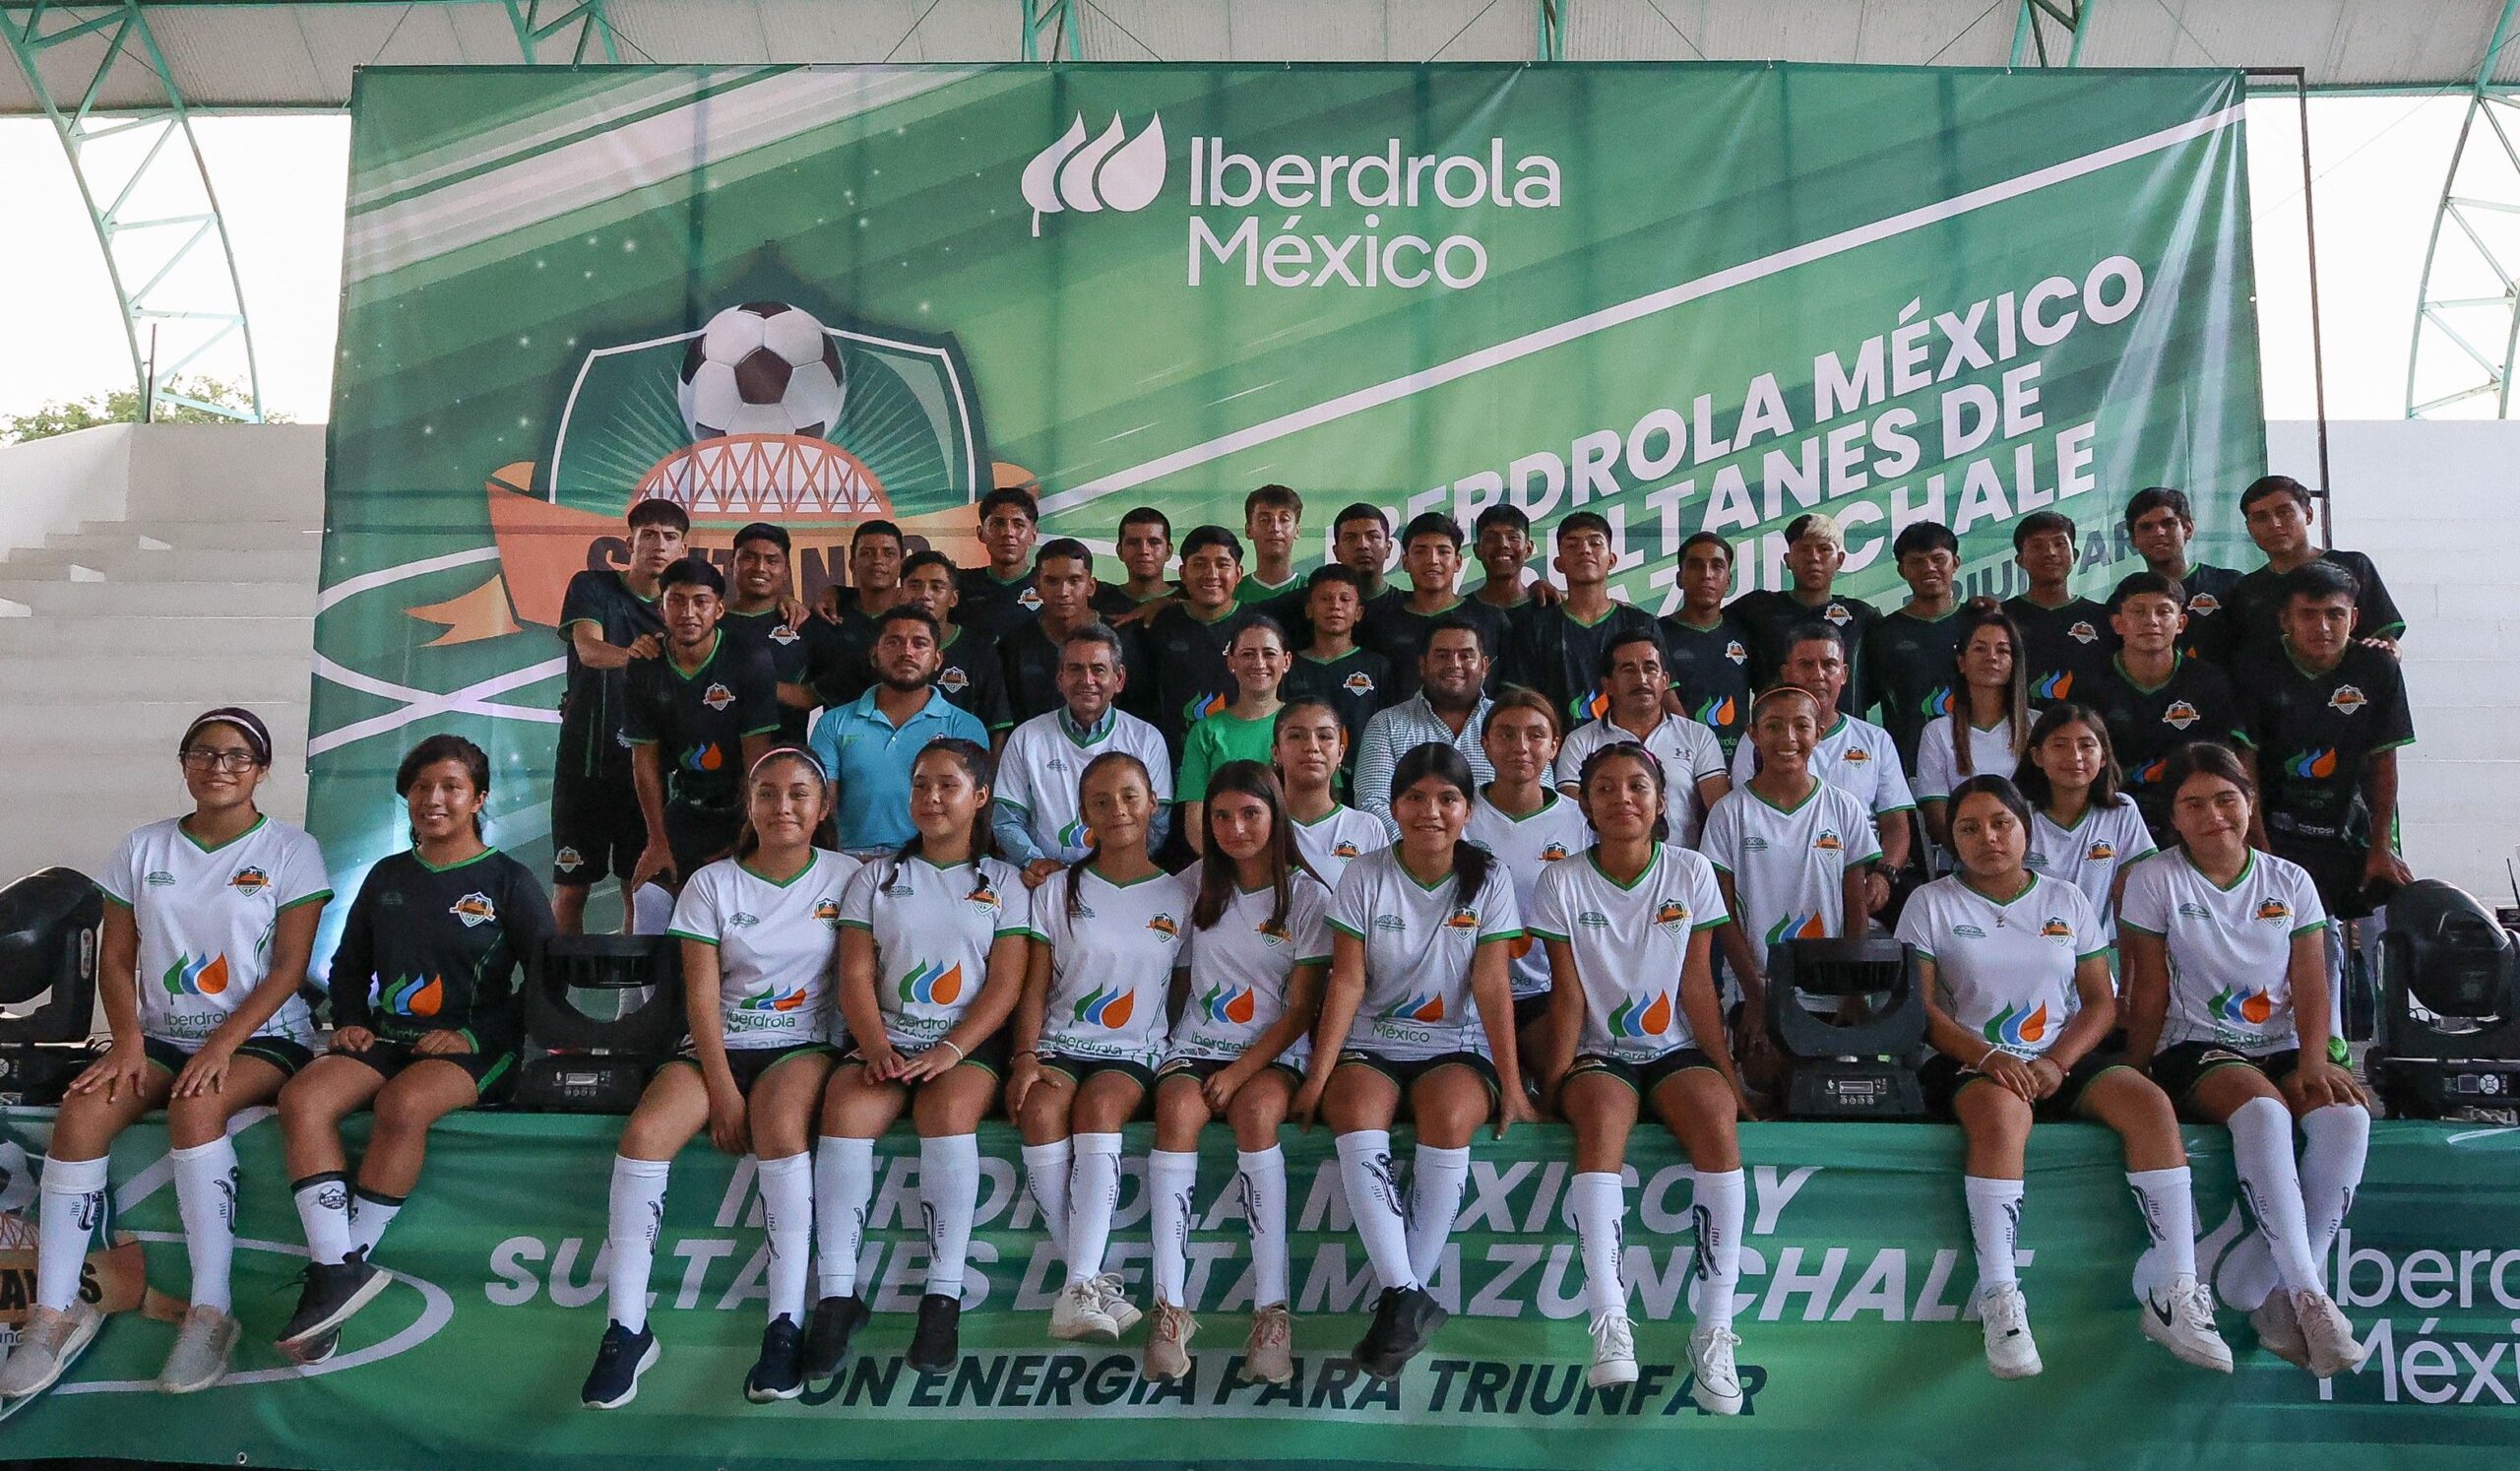 Los Sultanes celebran un año de éxitos futbolísticos y empoderamiento femenino junto a Iberdrola México